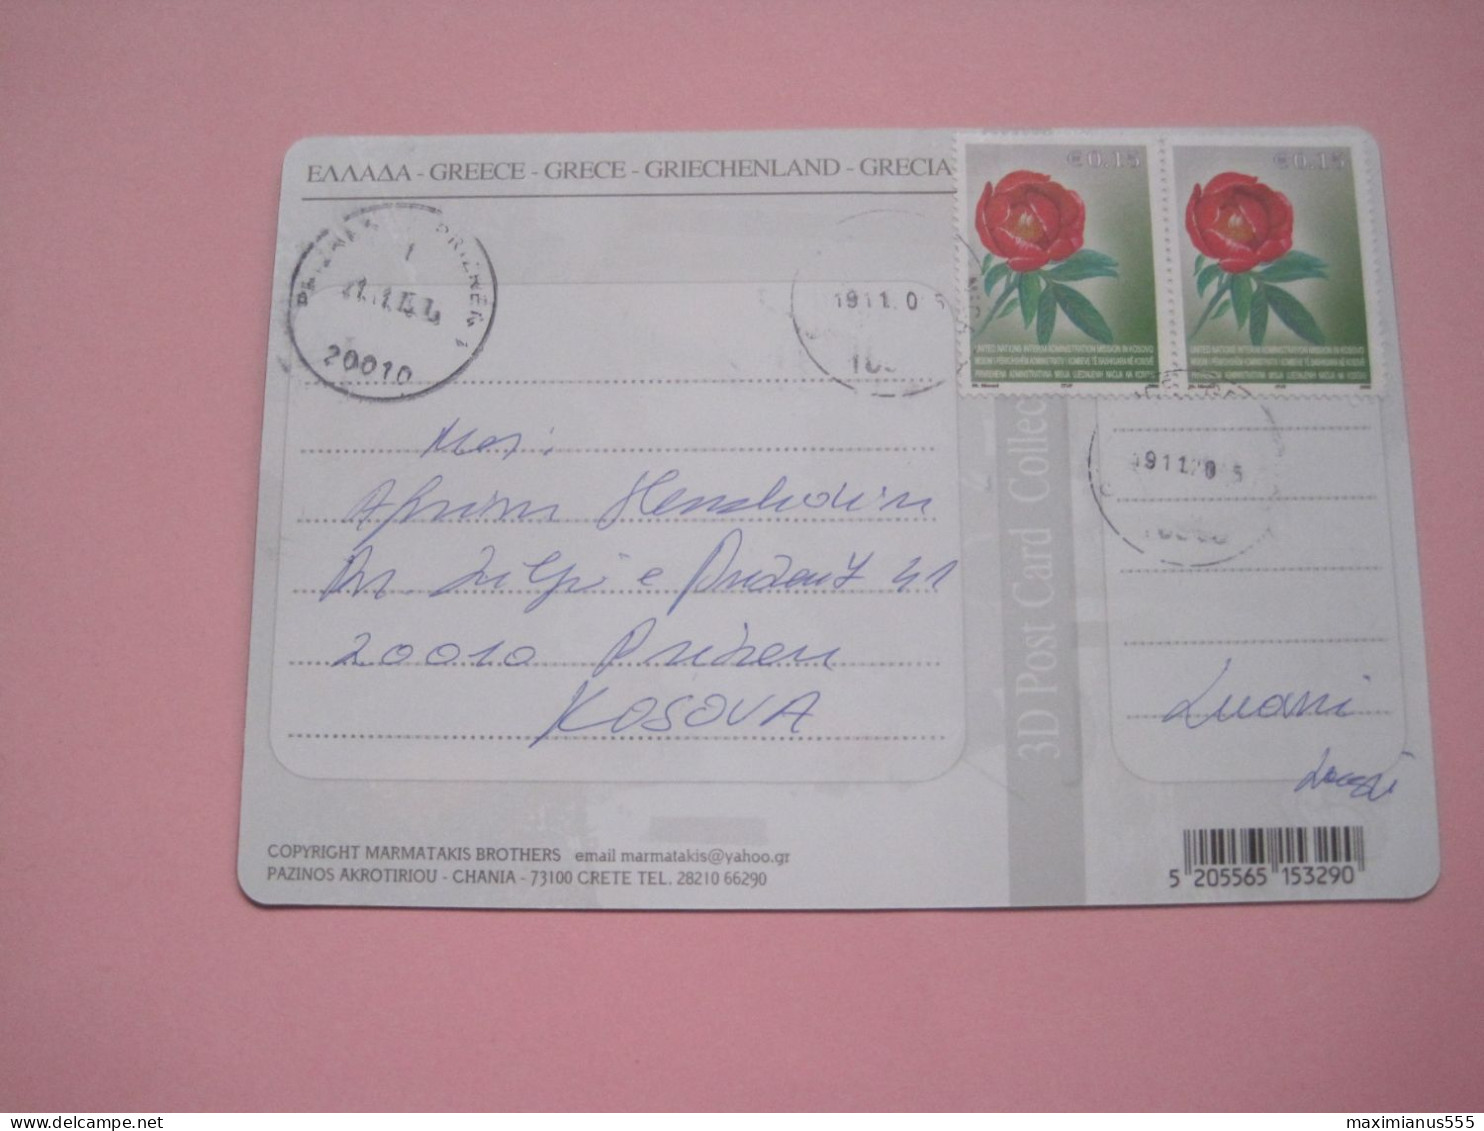 Kosovo Airmail Postcard Sent From Gracanica To Prizren 2015 (1) - Kosovo